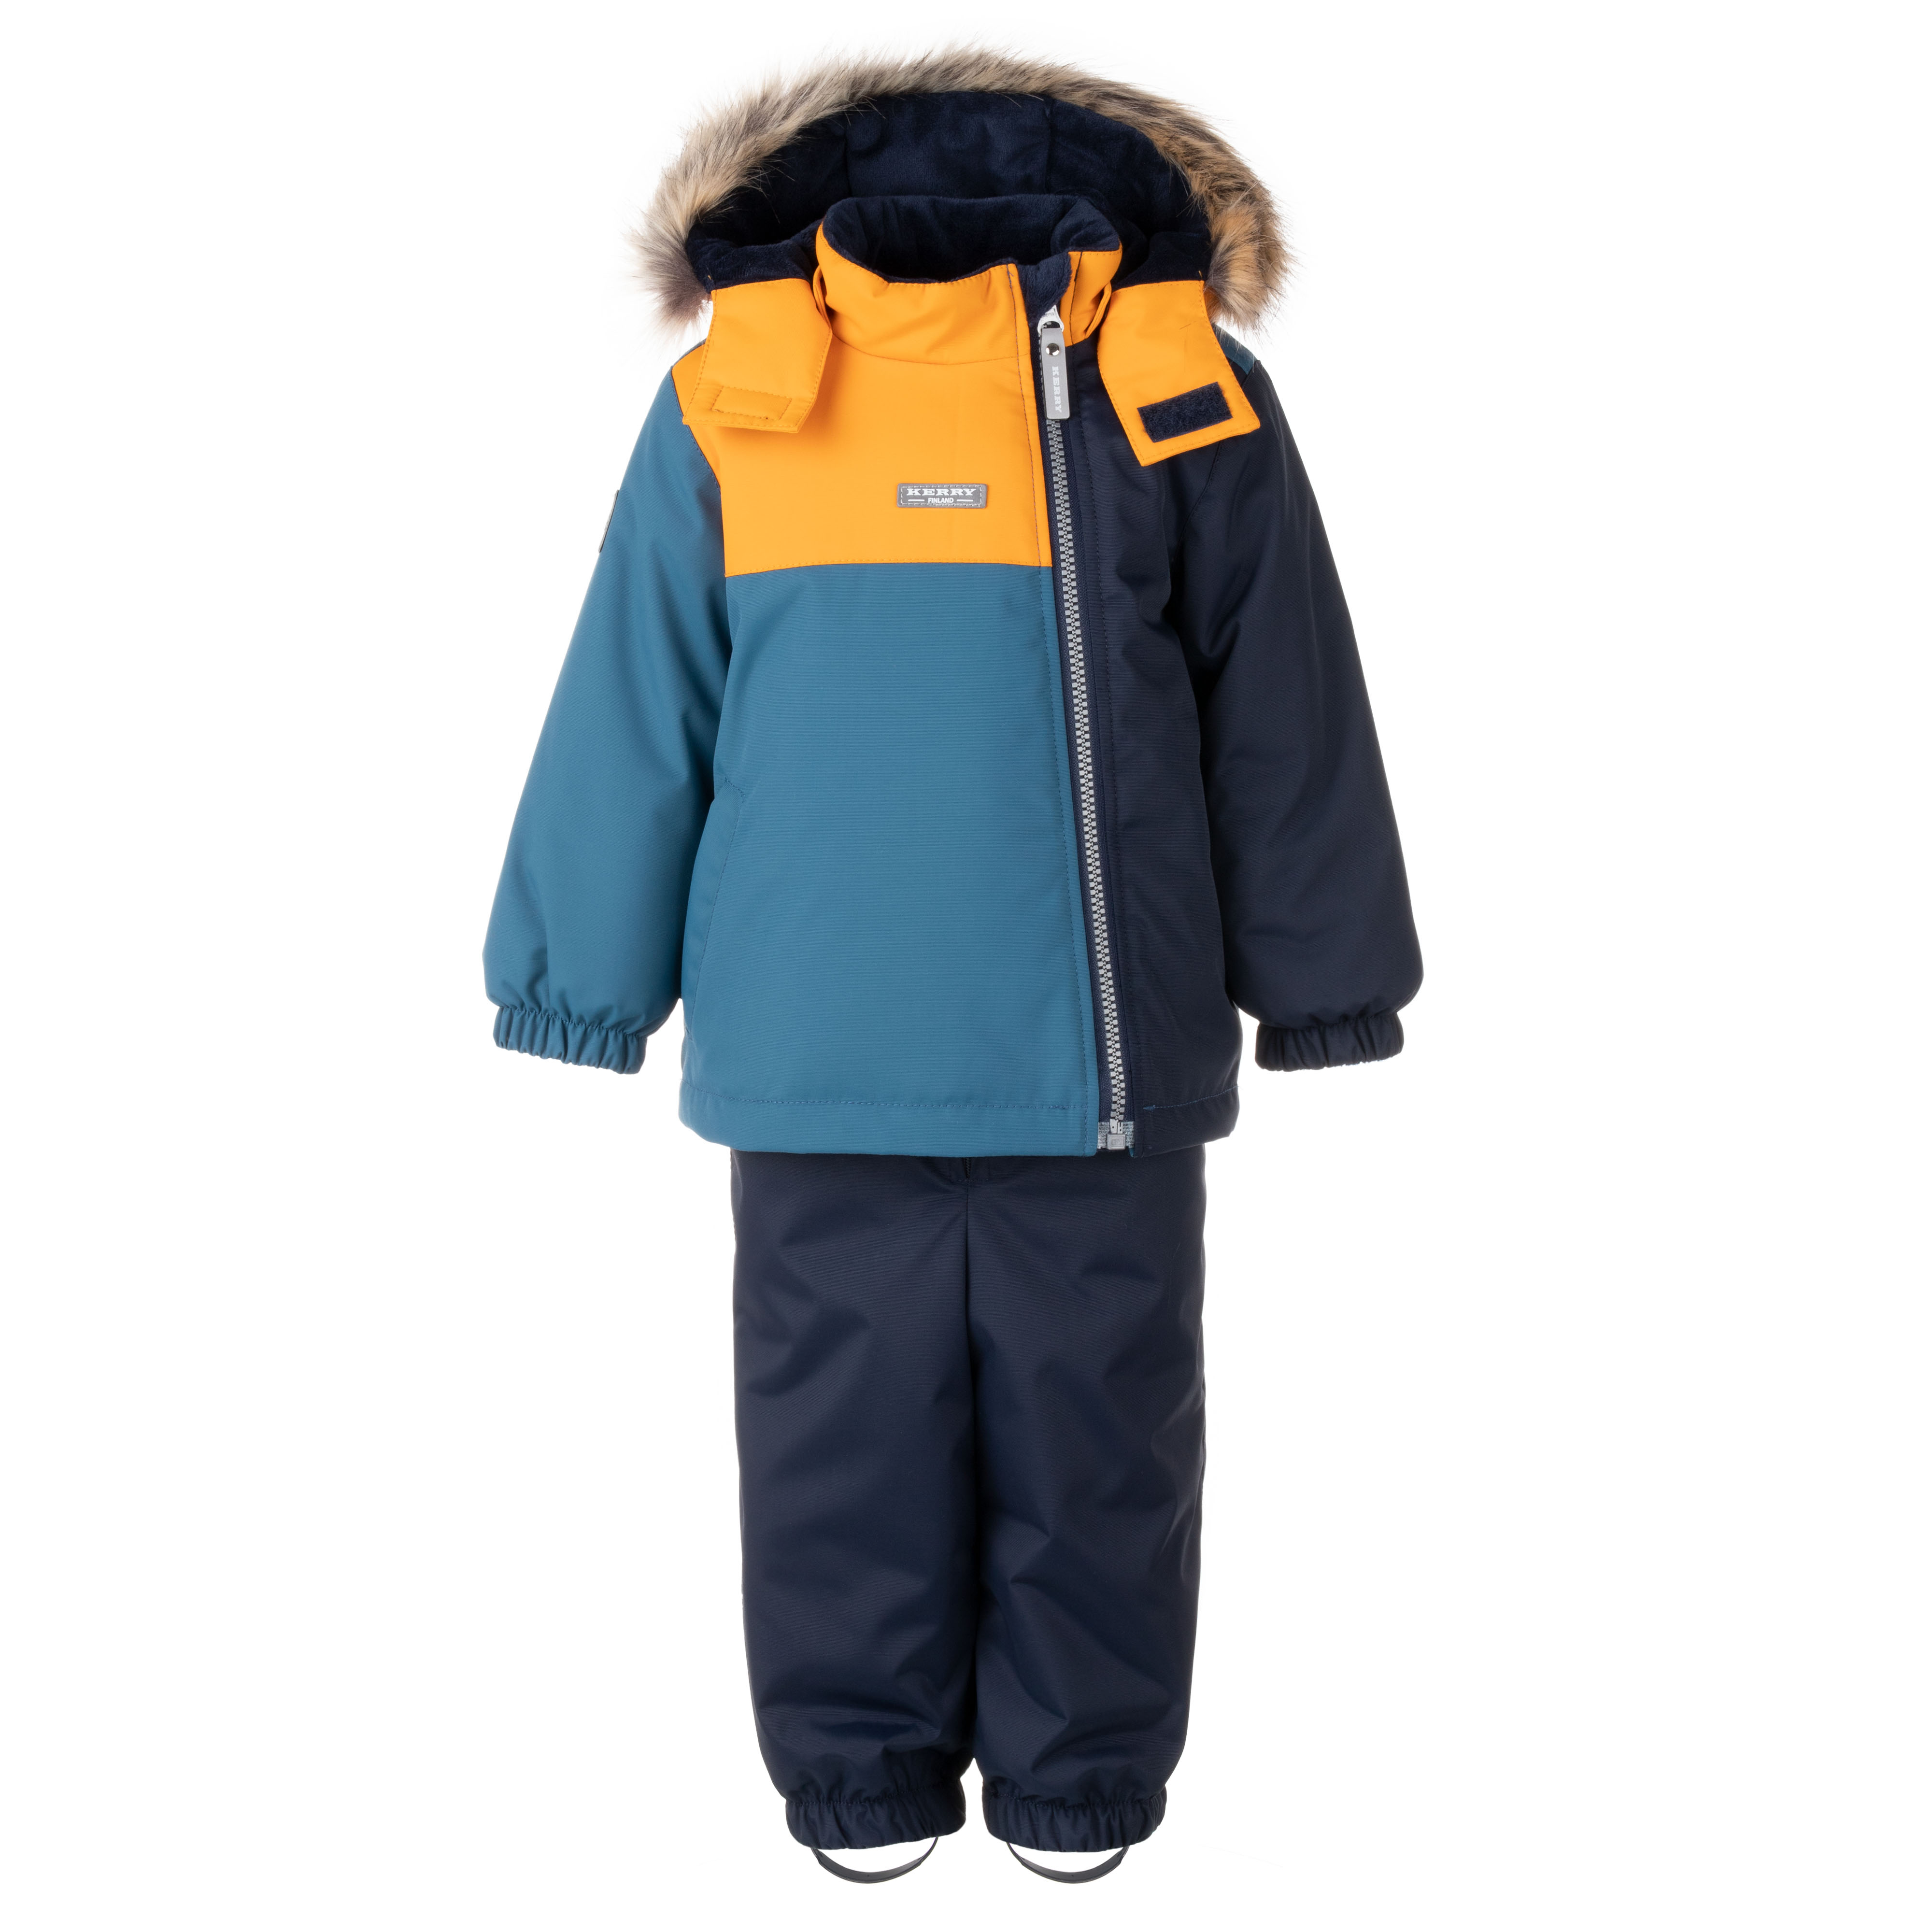 Комплект верхней одежды детский KERRY K22417, синий, 98